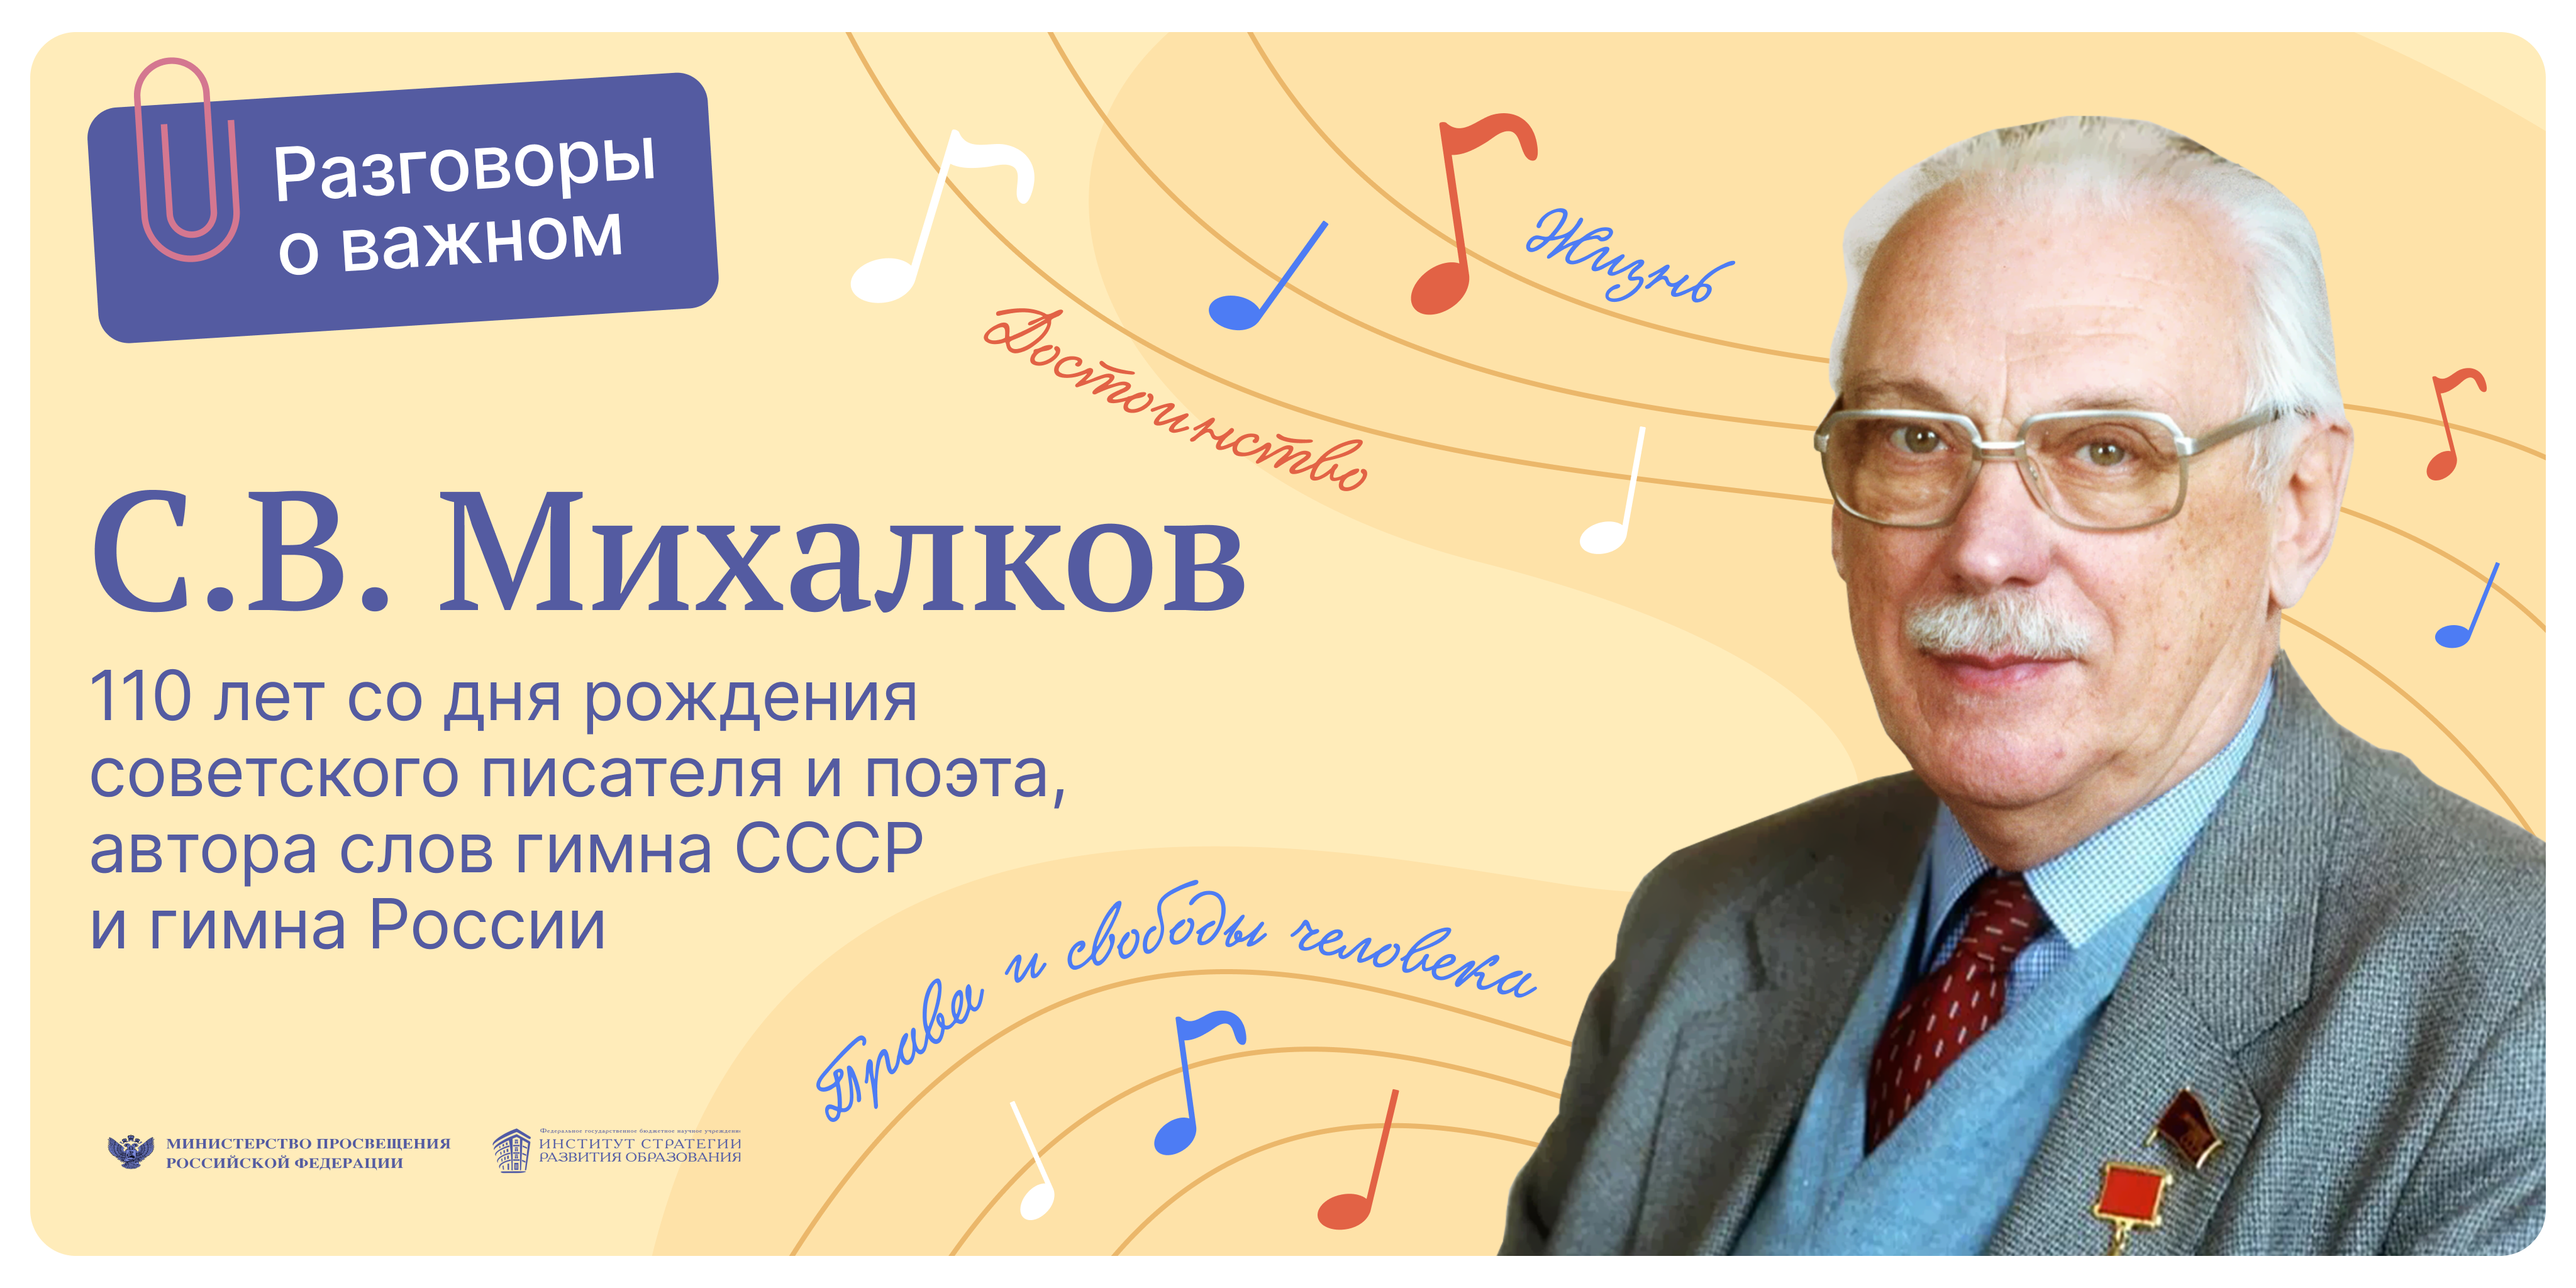 С.В. Михалков. 110 лет со дня рождения советского писателя и поэта,  автора слов гимна СССР и России.